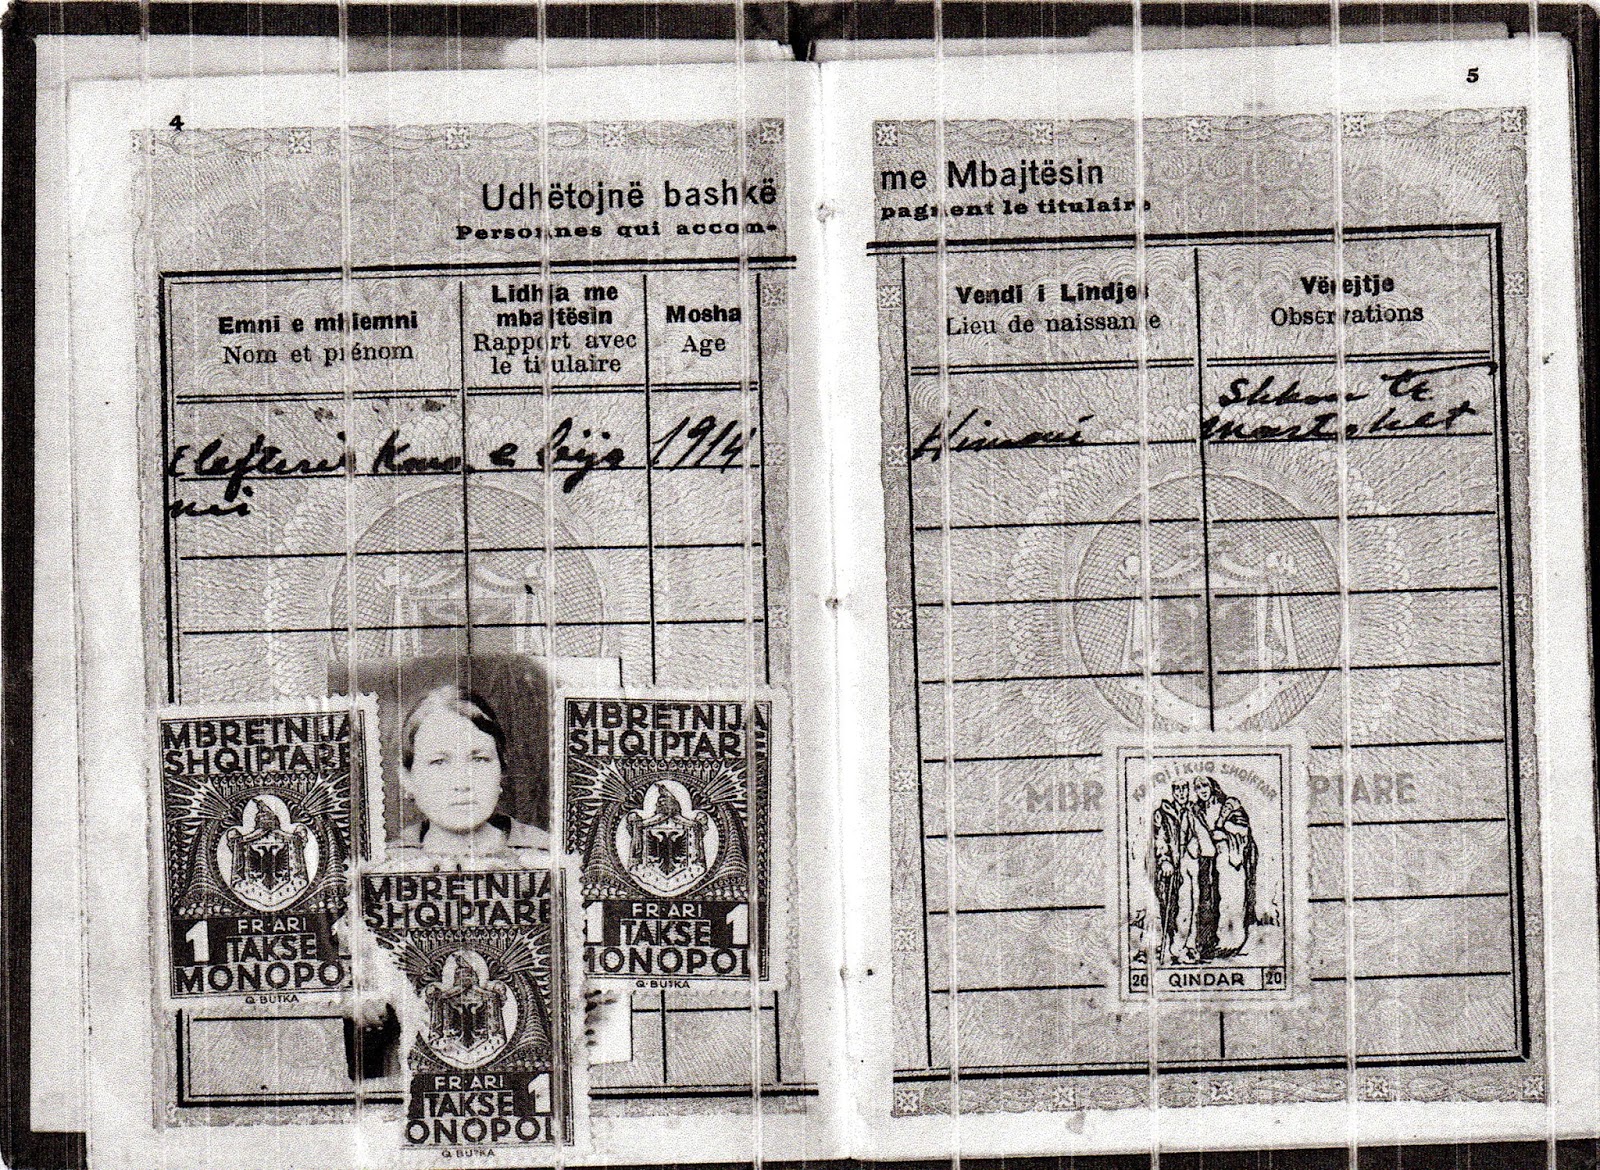 Ελευθερία Κονόμη – αλβανικό διαβατήριο